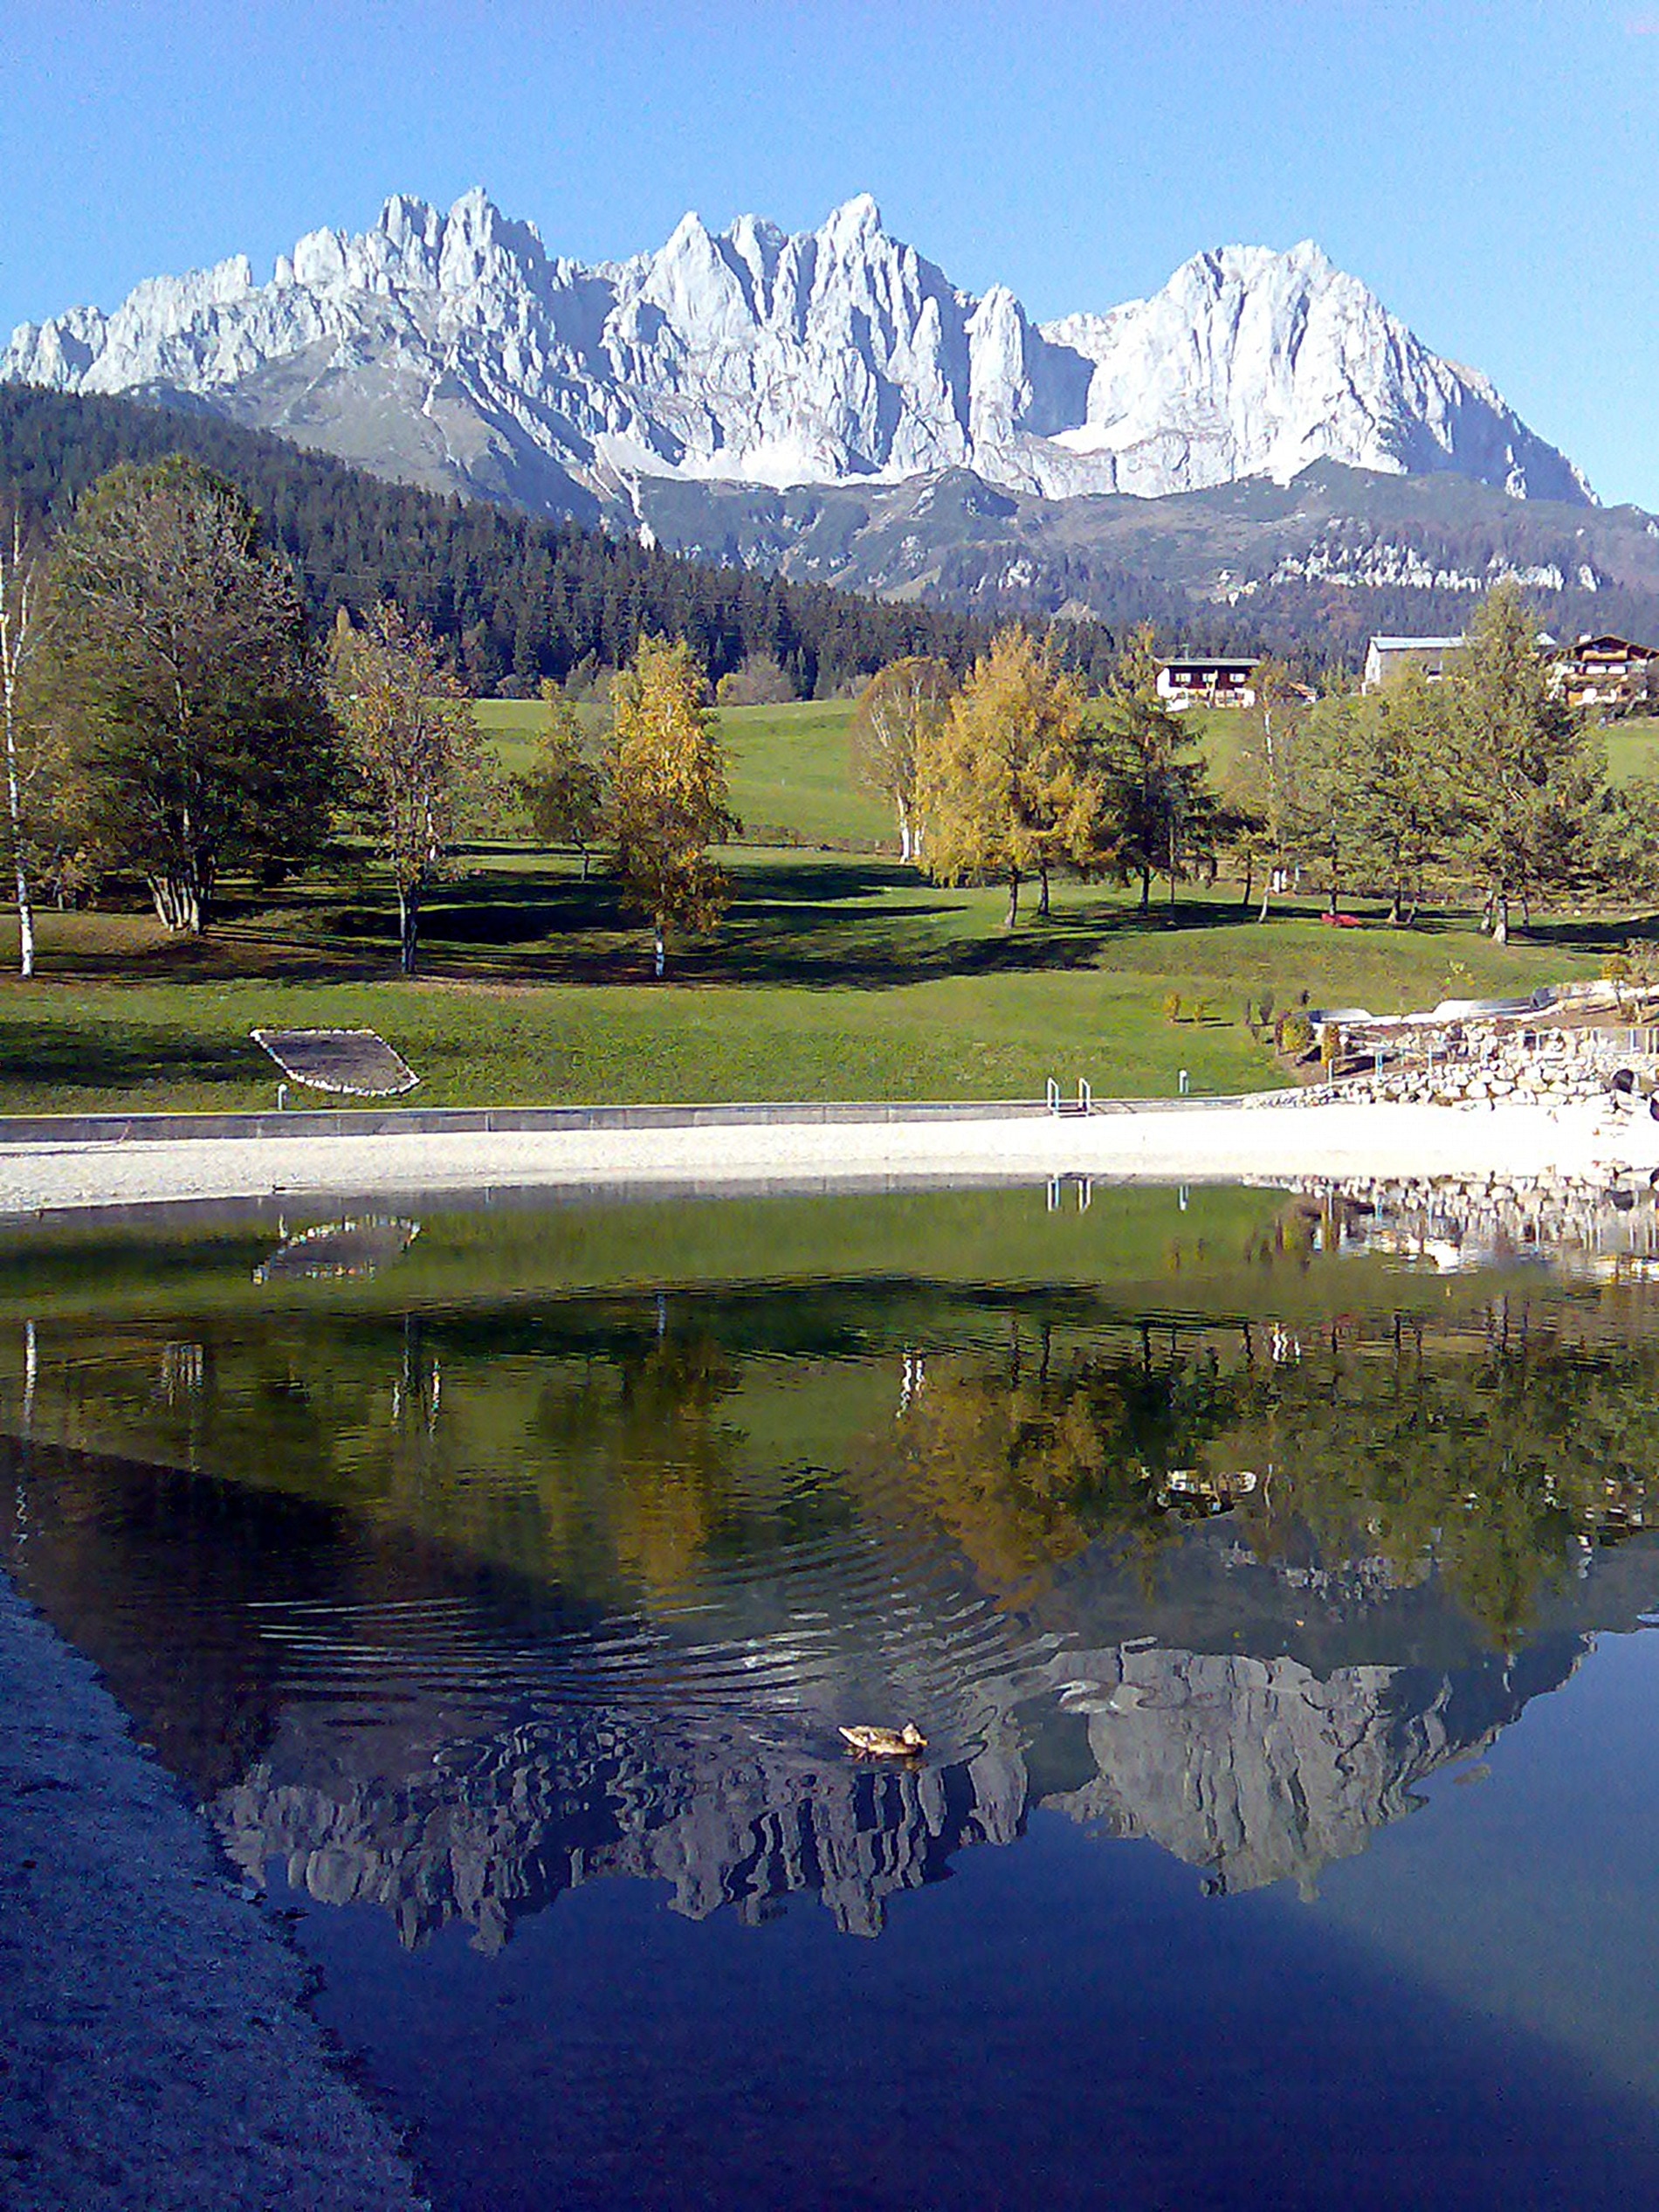 Austria, Wilder, Emperor, Mountains, mountain, reflection